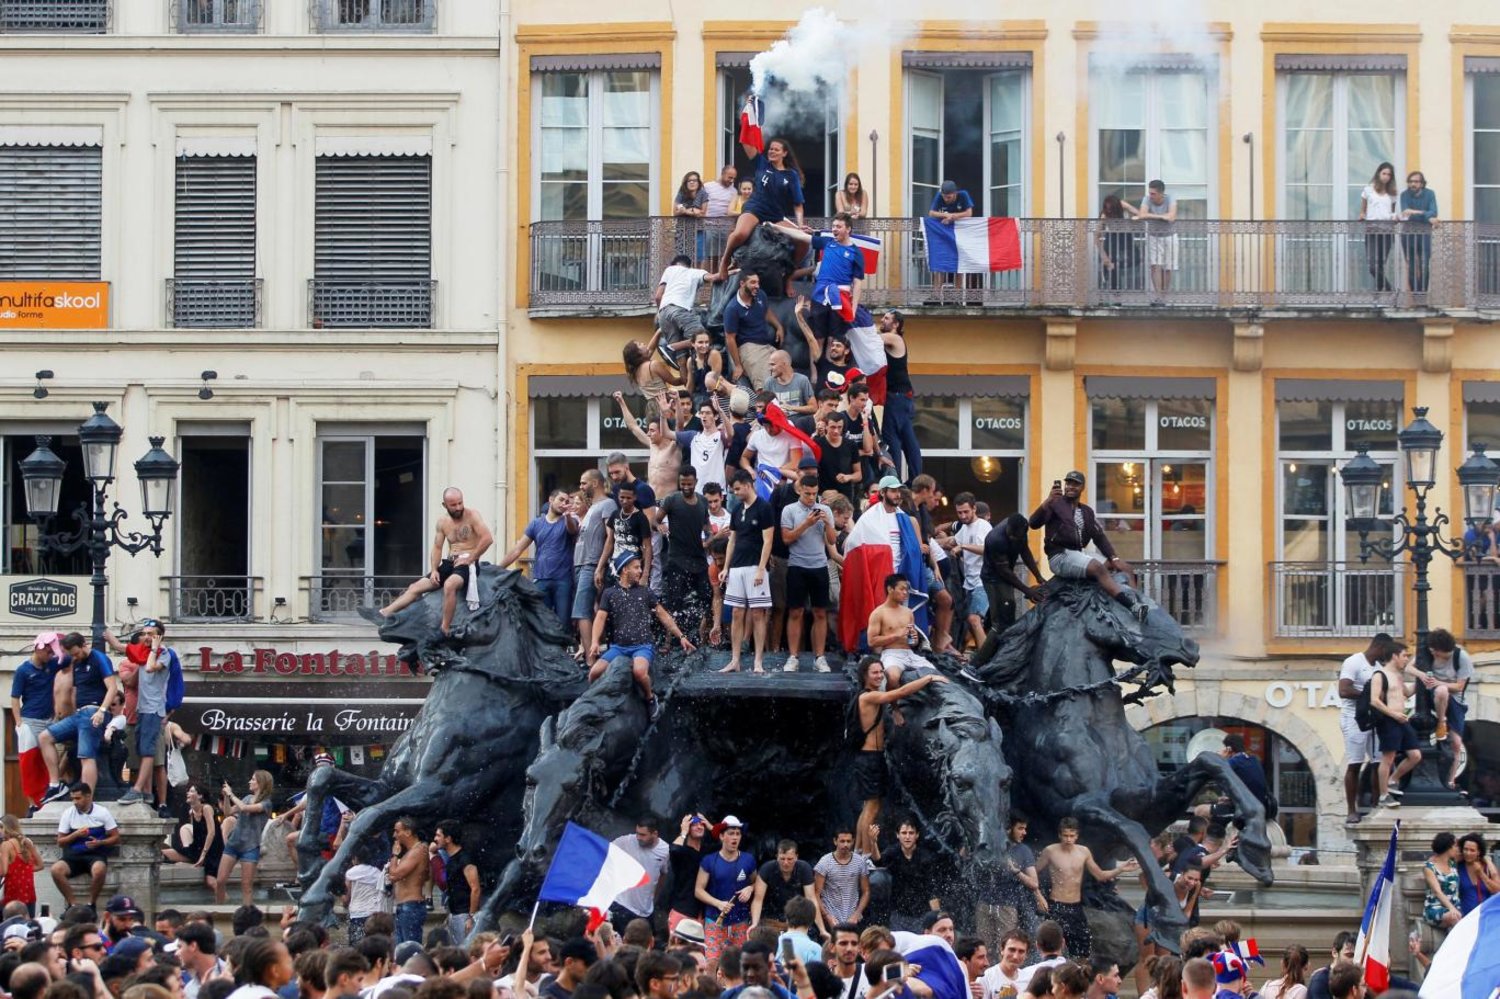 Fransızlar 2018'de Dünya Kupası zaferini kutluyor (Reuters)

